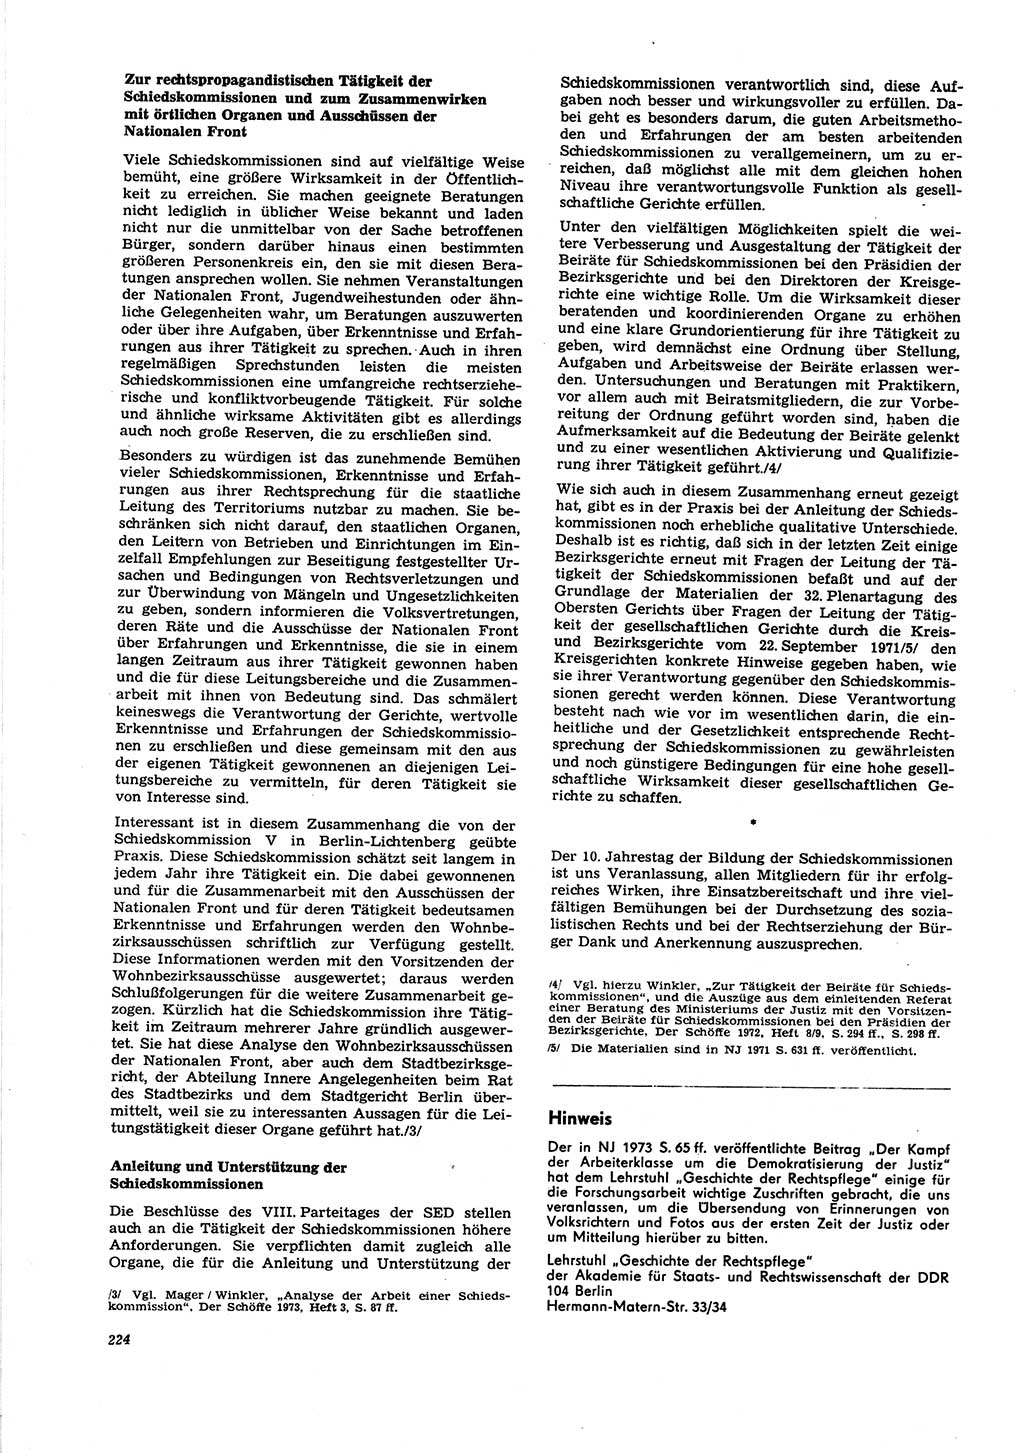 Neue Justiz (NJ), Zeitschrift für Recht und Rechtswissenschaft [Deutsche Demokratische Republik (DDR)], 27. Jahrgang 1973, Seite 224 (NJ DDR 1973, S. 224)